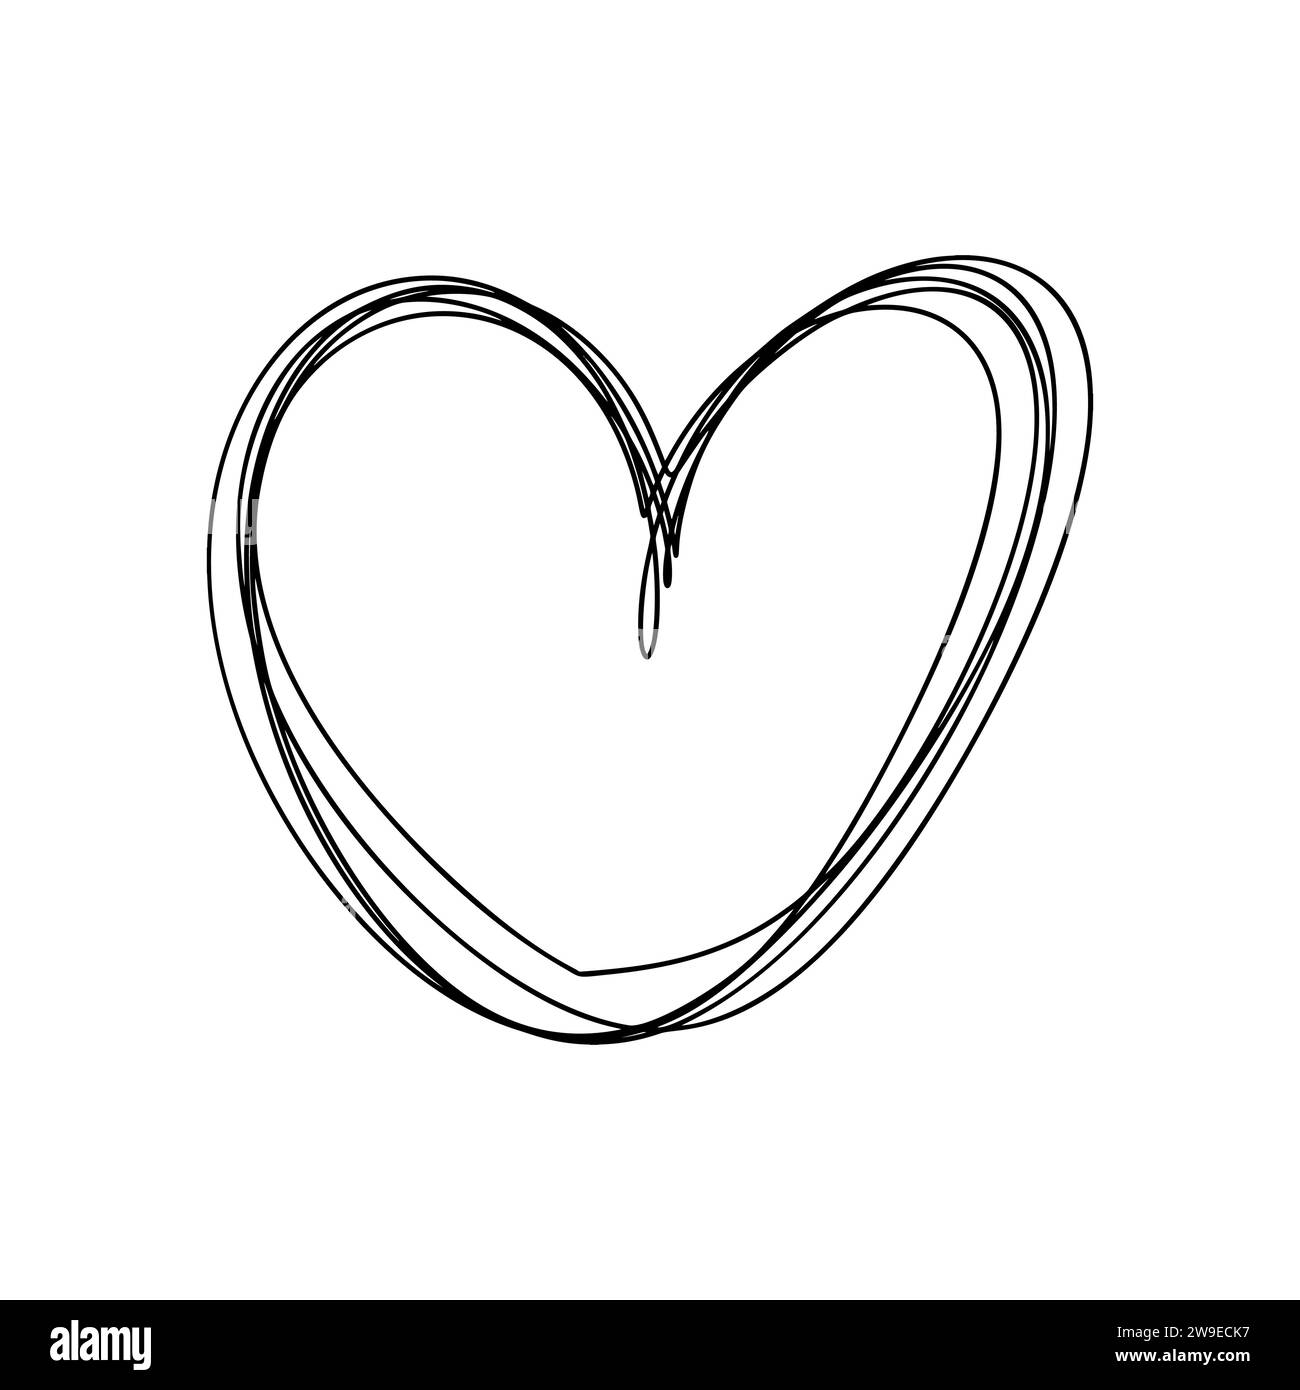 Liebe Herz Vektor Linie Illustration. Schwarze Kontur. Element für Valentinstag Banner, Poster, Grußkarte Stock Vektor